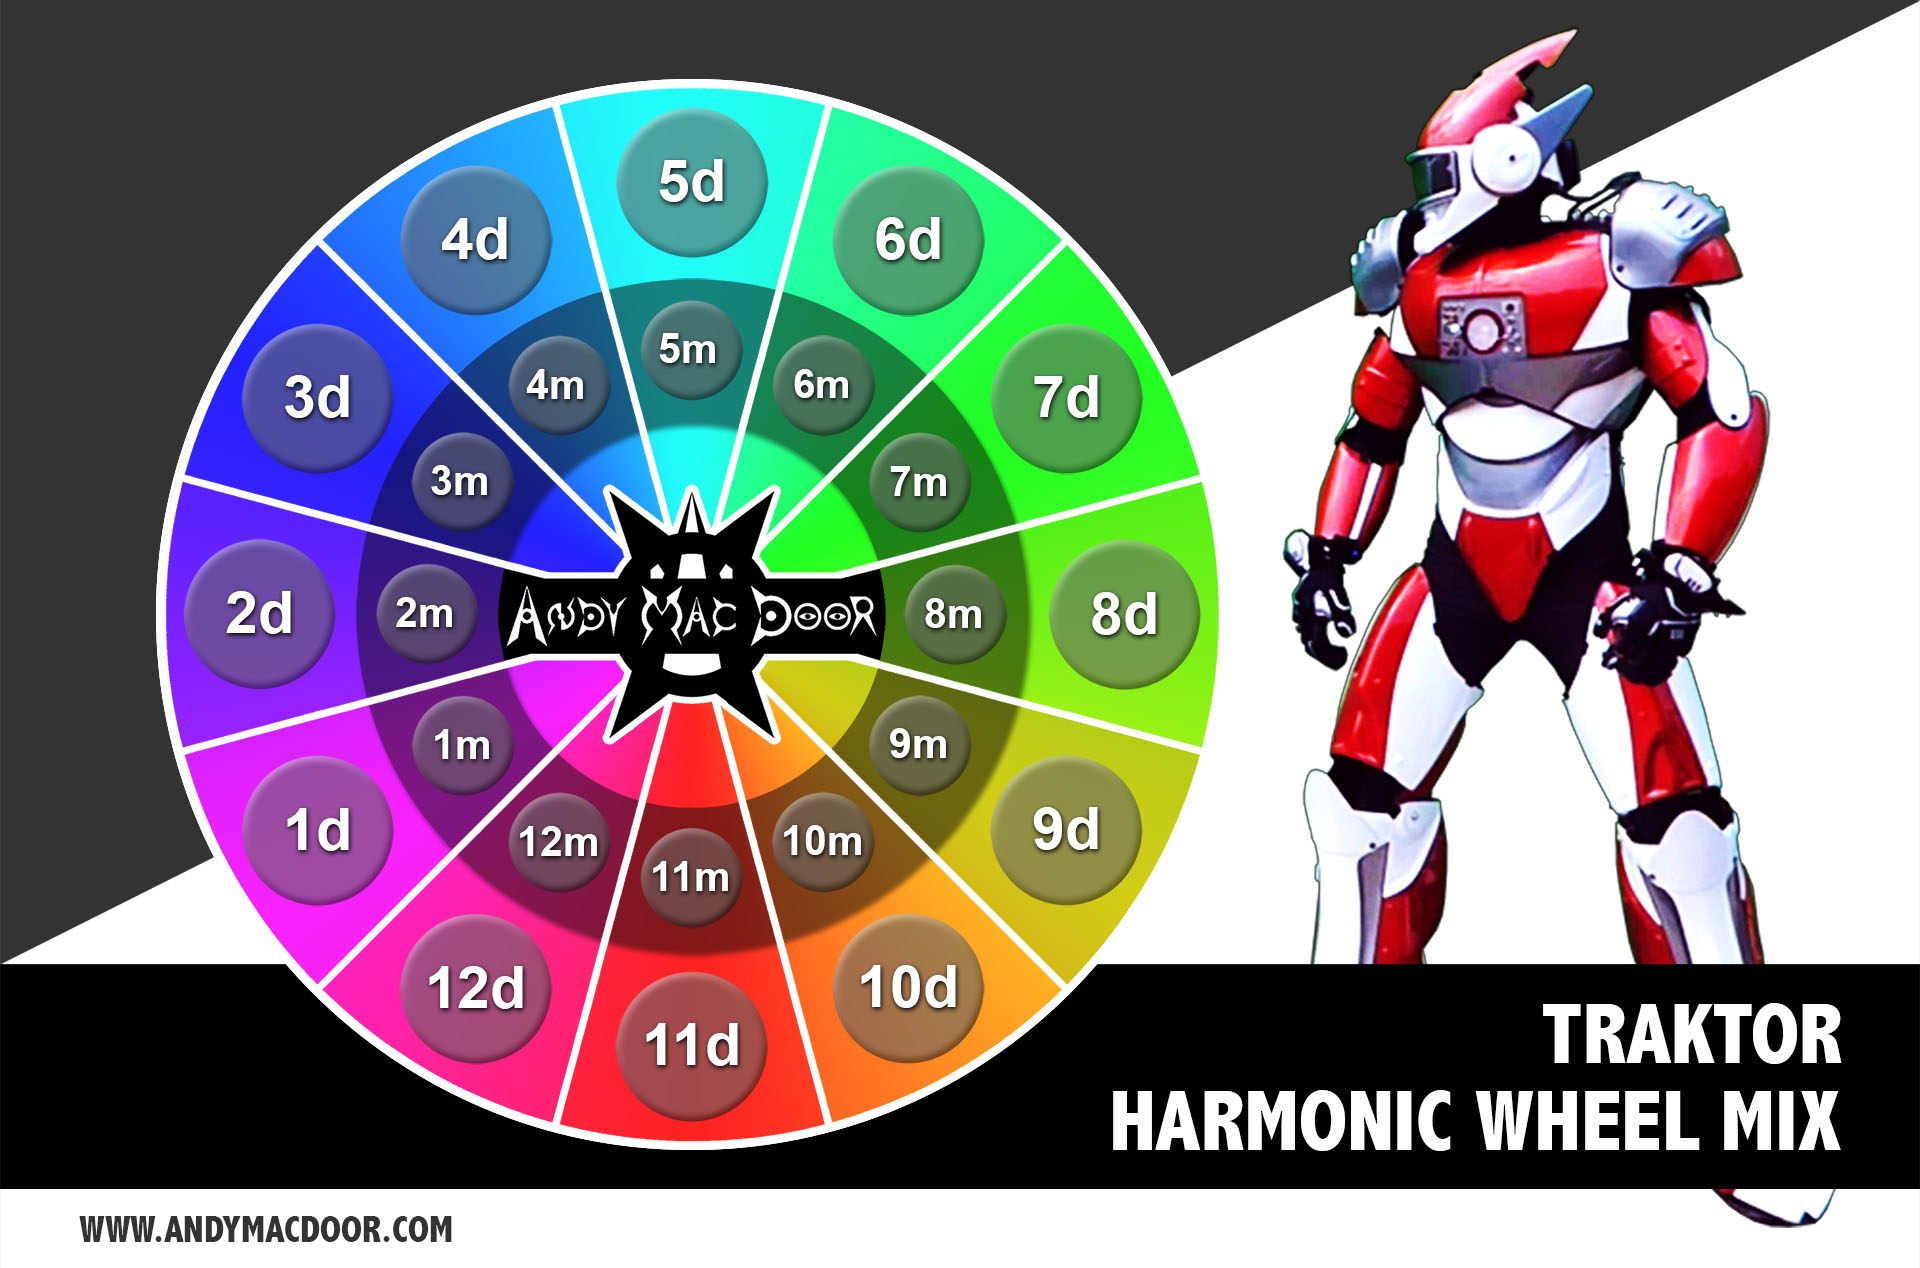 TRAKTOR - Harmonic mix wheel schema - Camelot - by Andy Mac Door